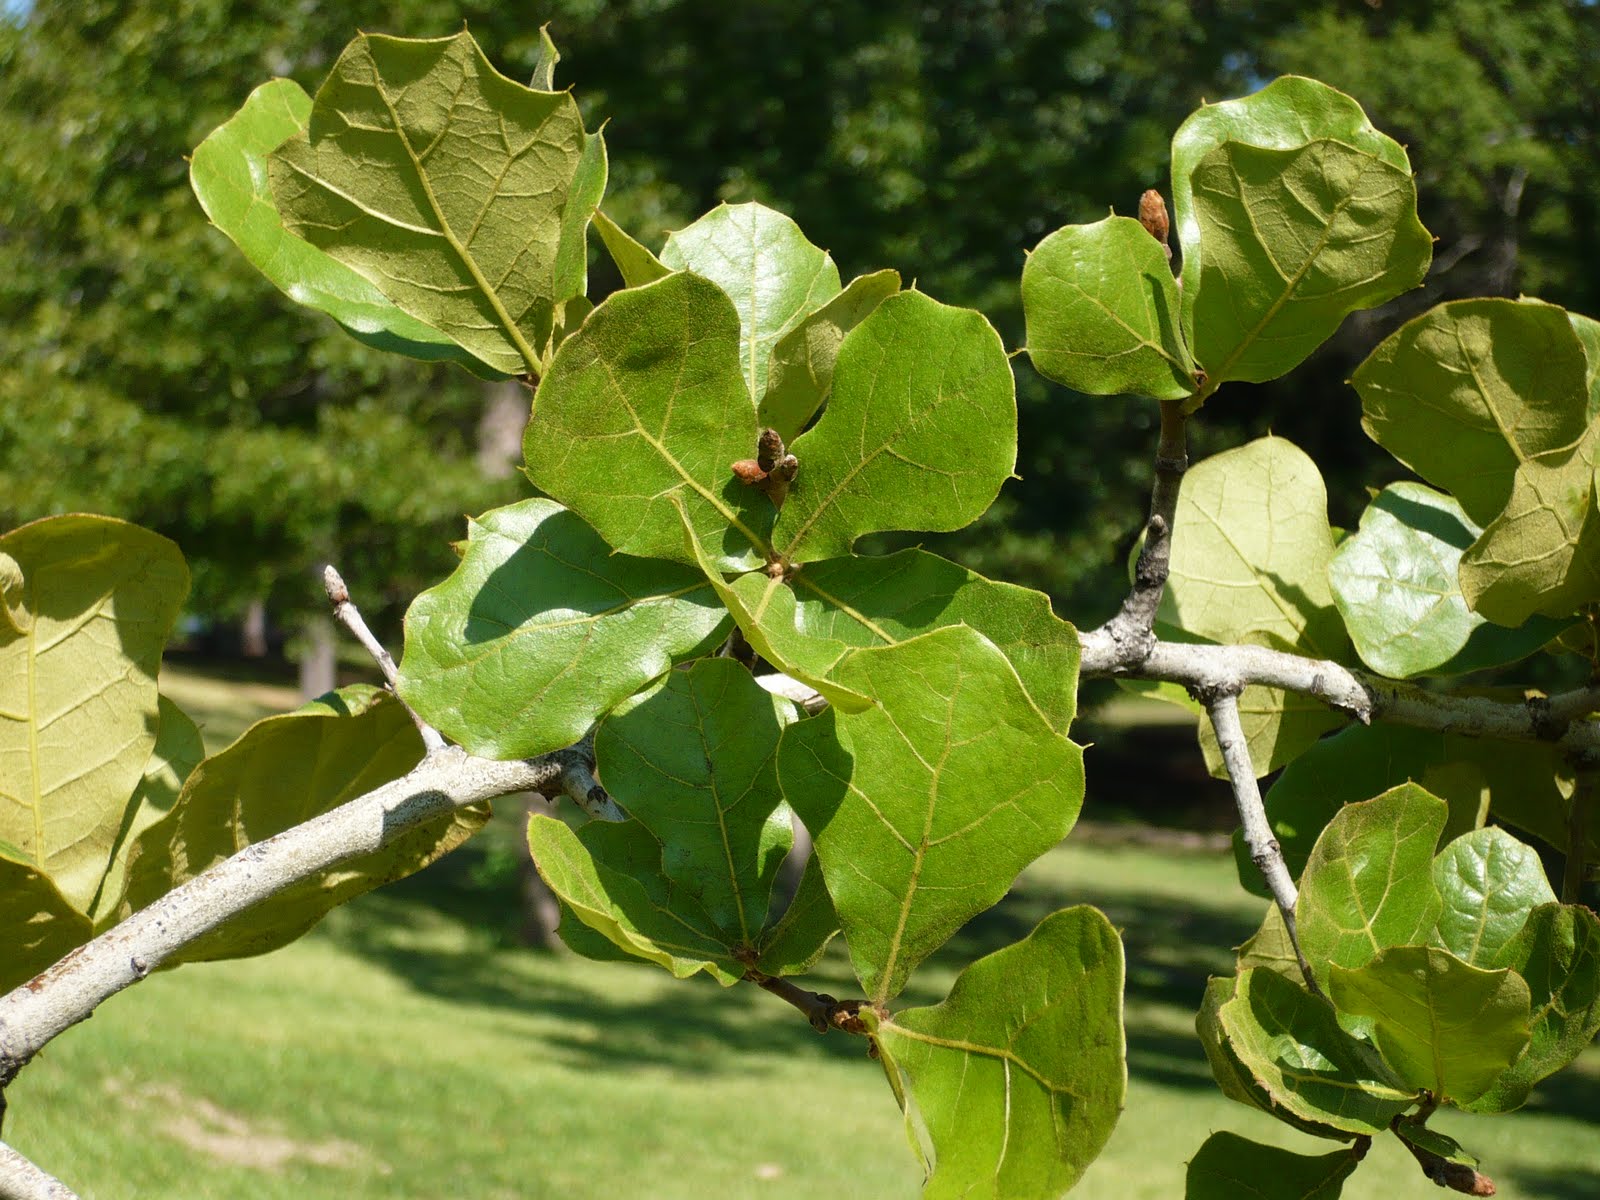 Centenary College Arboretum: Quercus marilandica
